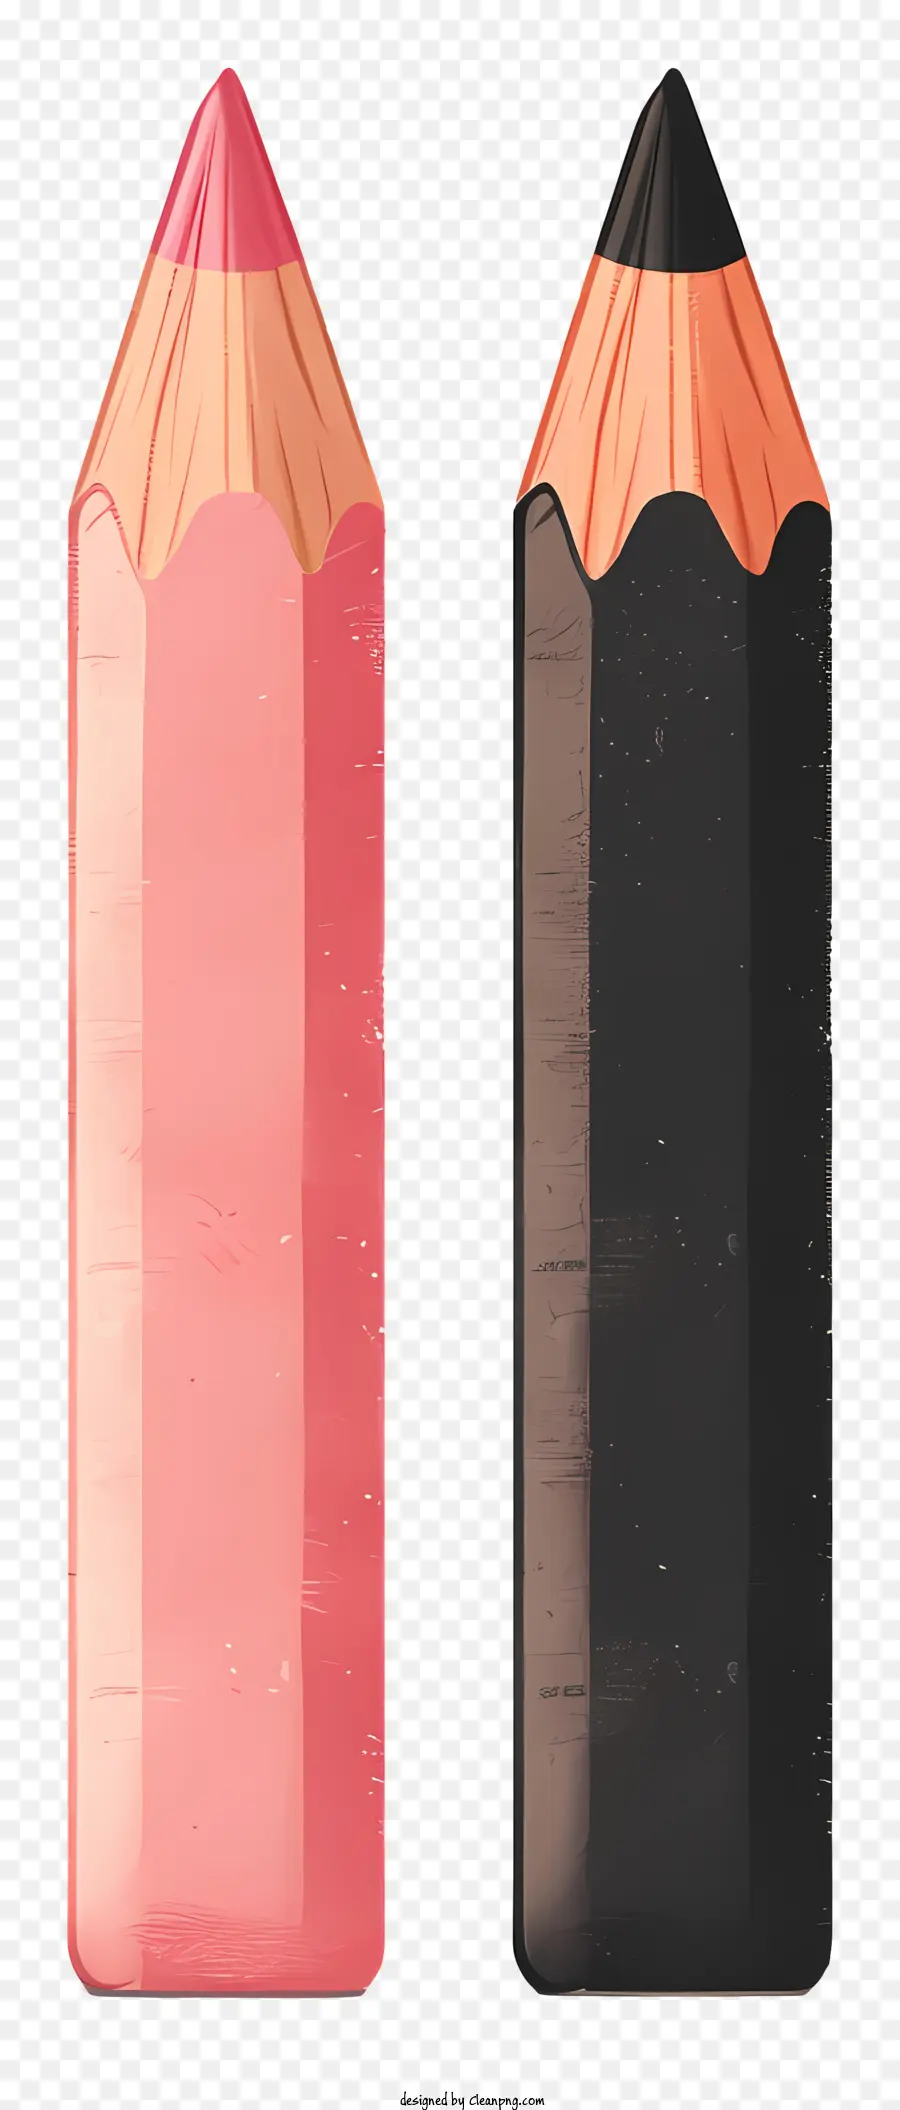 pencil eraser black red pink